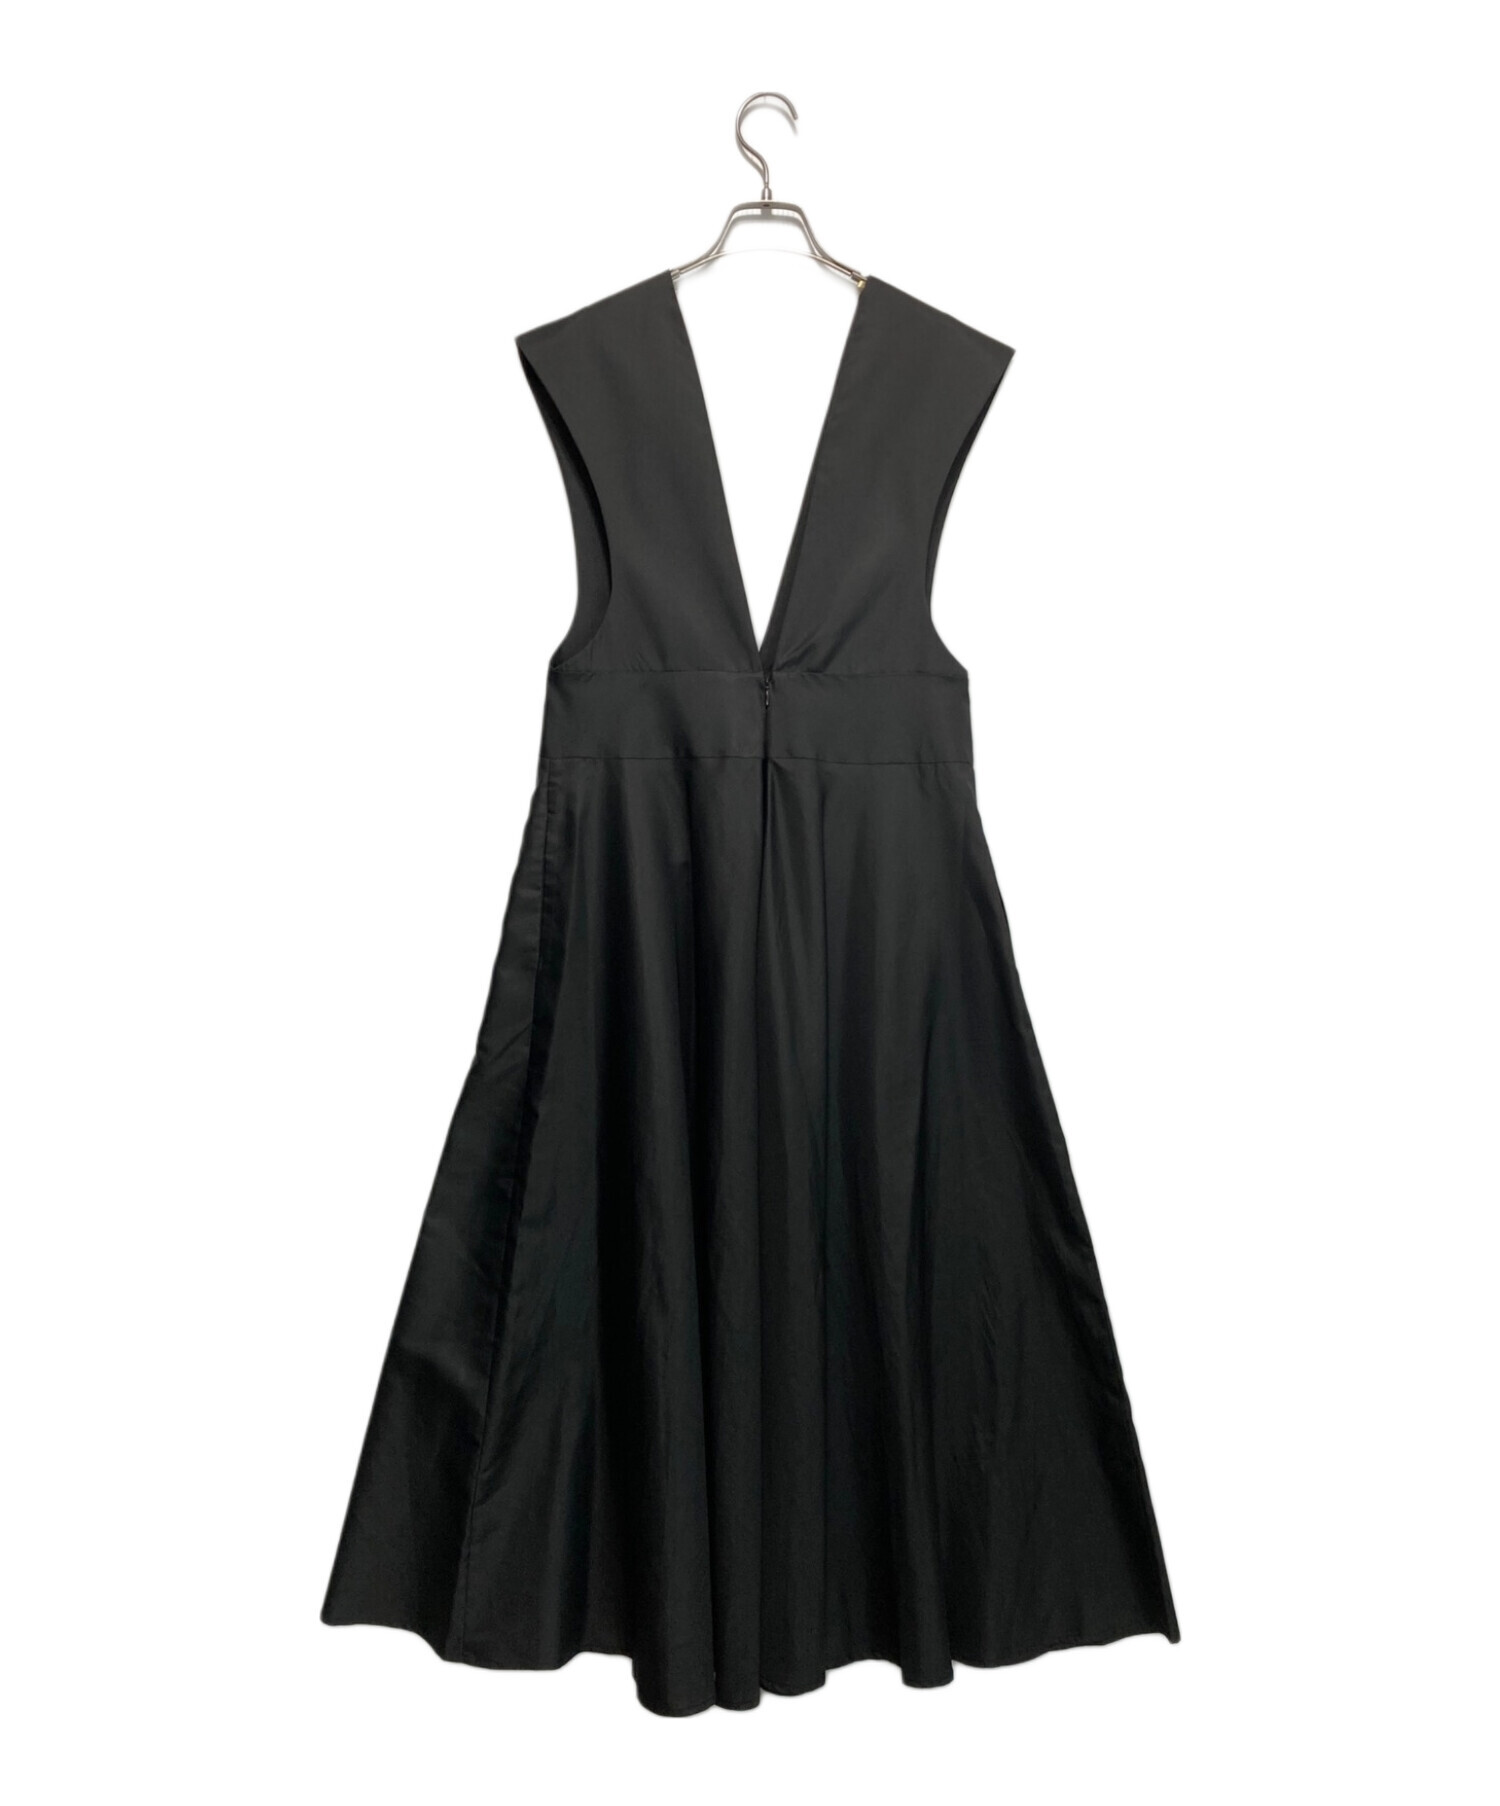 machatt (マチャット) Vネックジャンパースカート ブラック サイズ:F